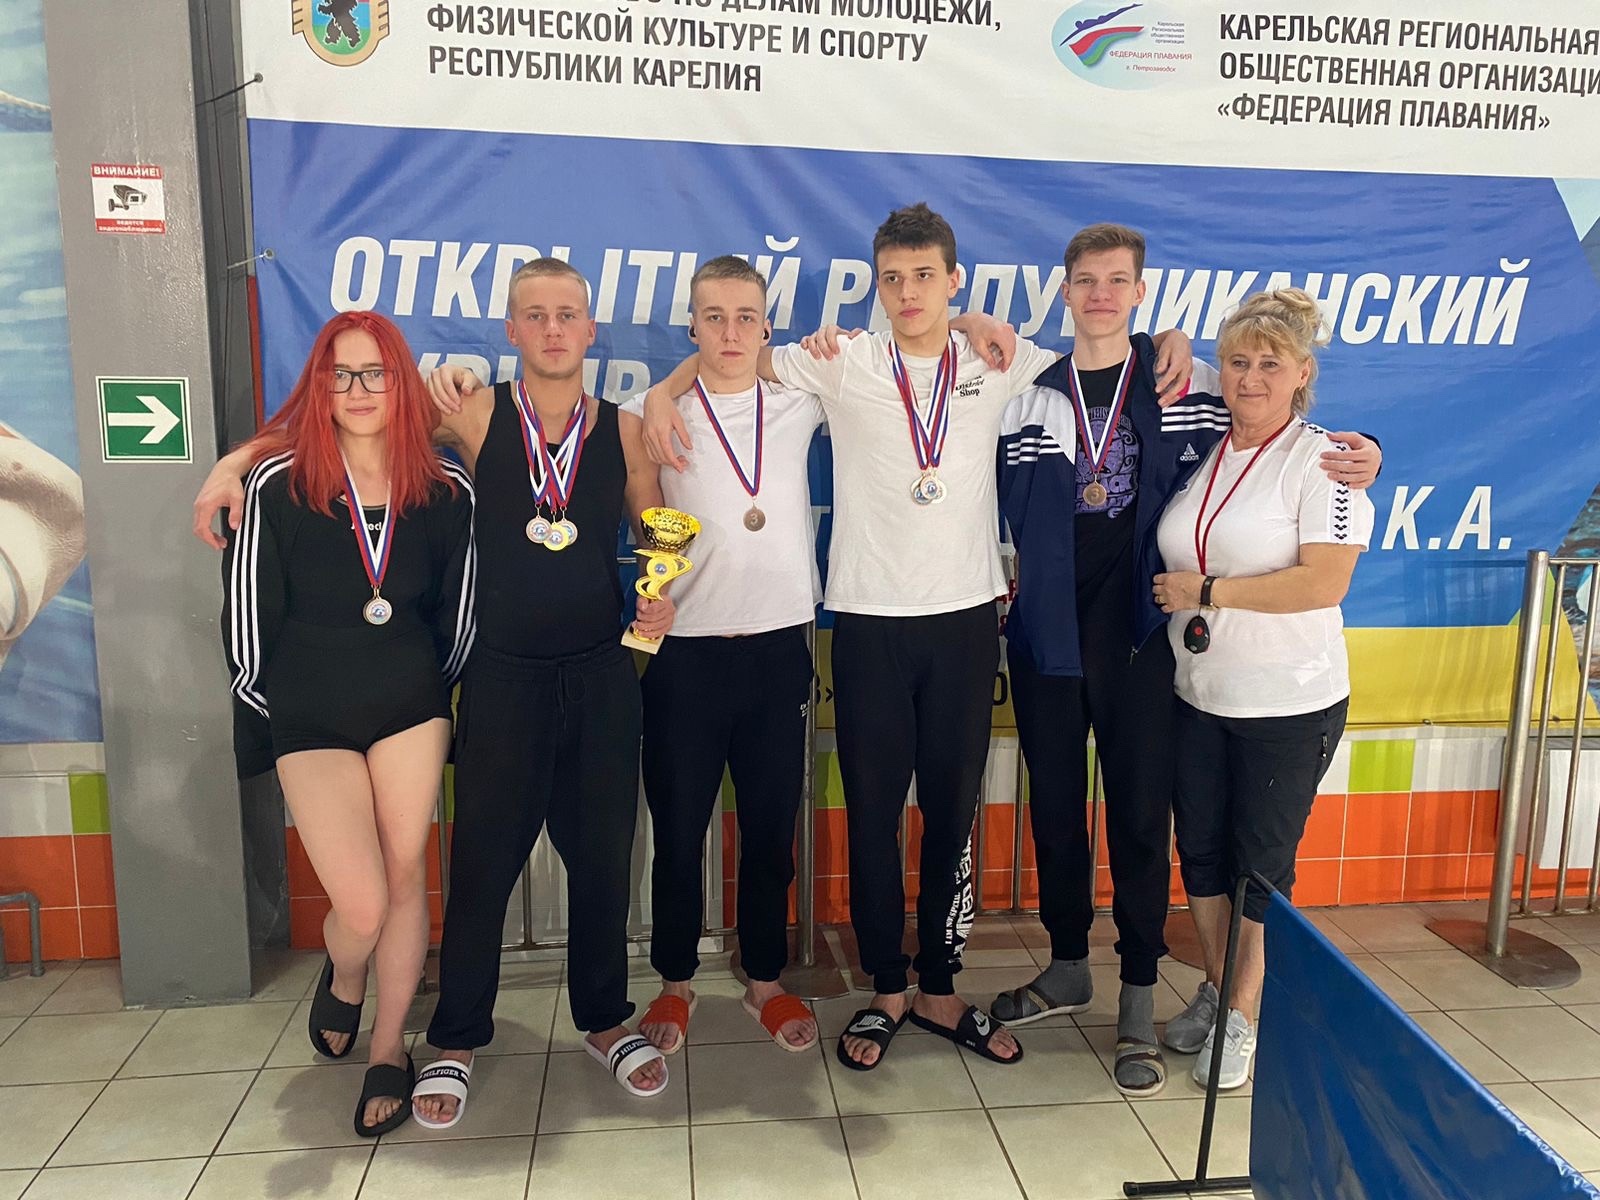 Спортсмены из города горняков завоевали десять медалей на чемпионате Карелии по плаванию